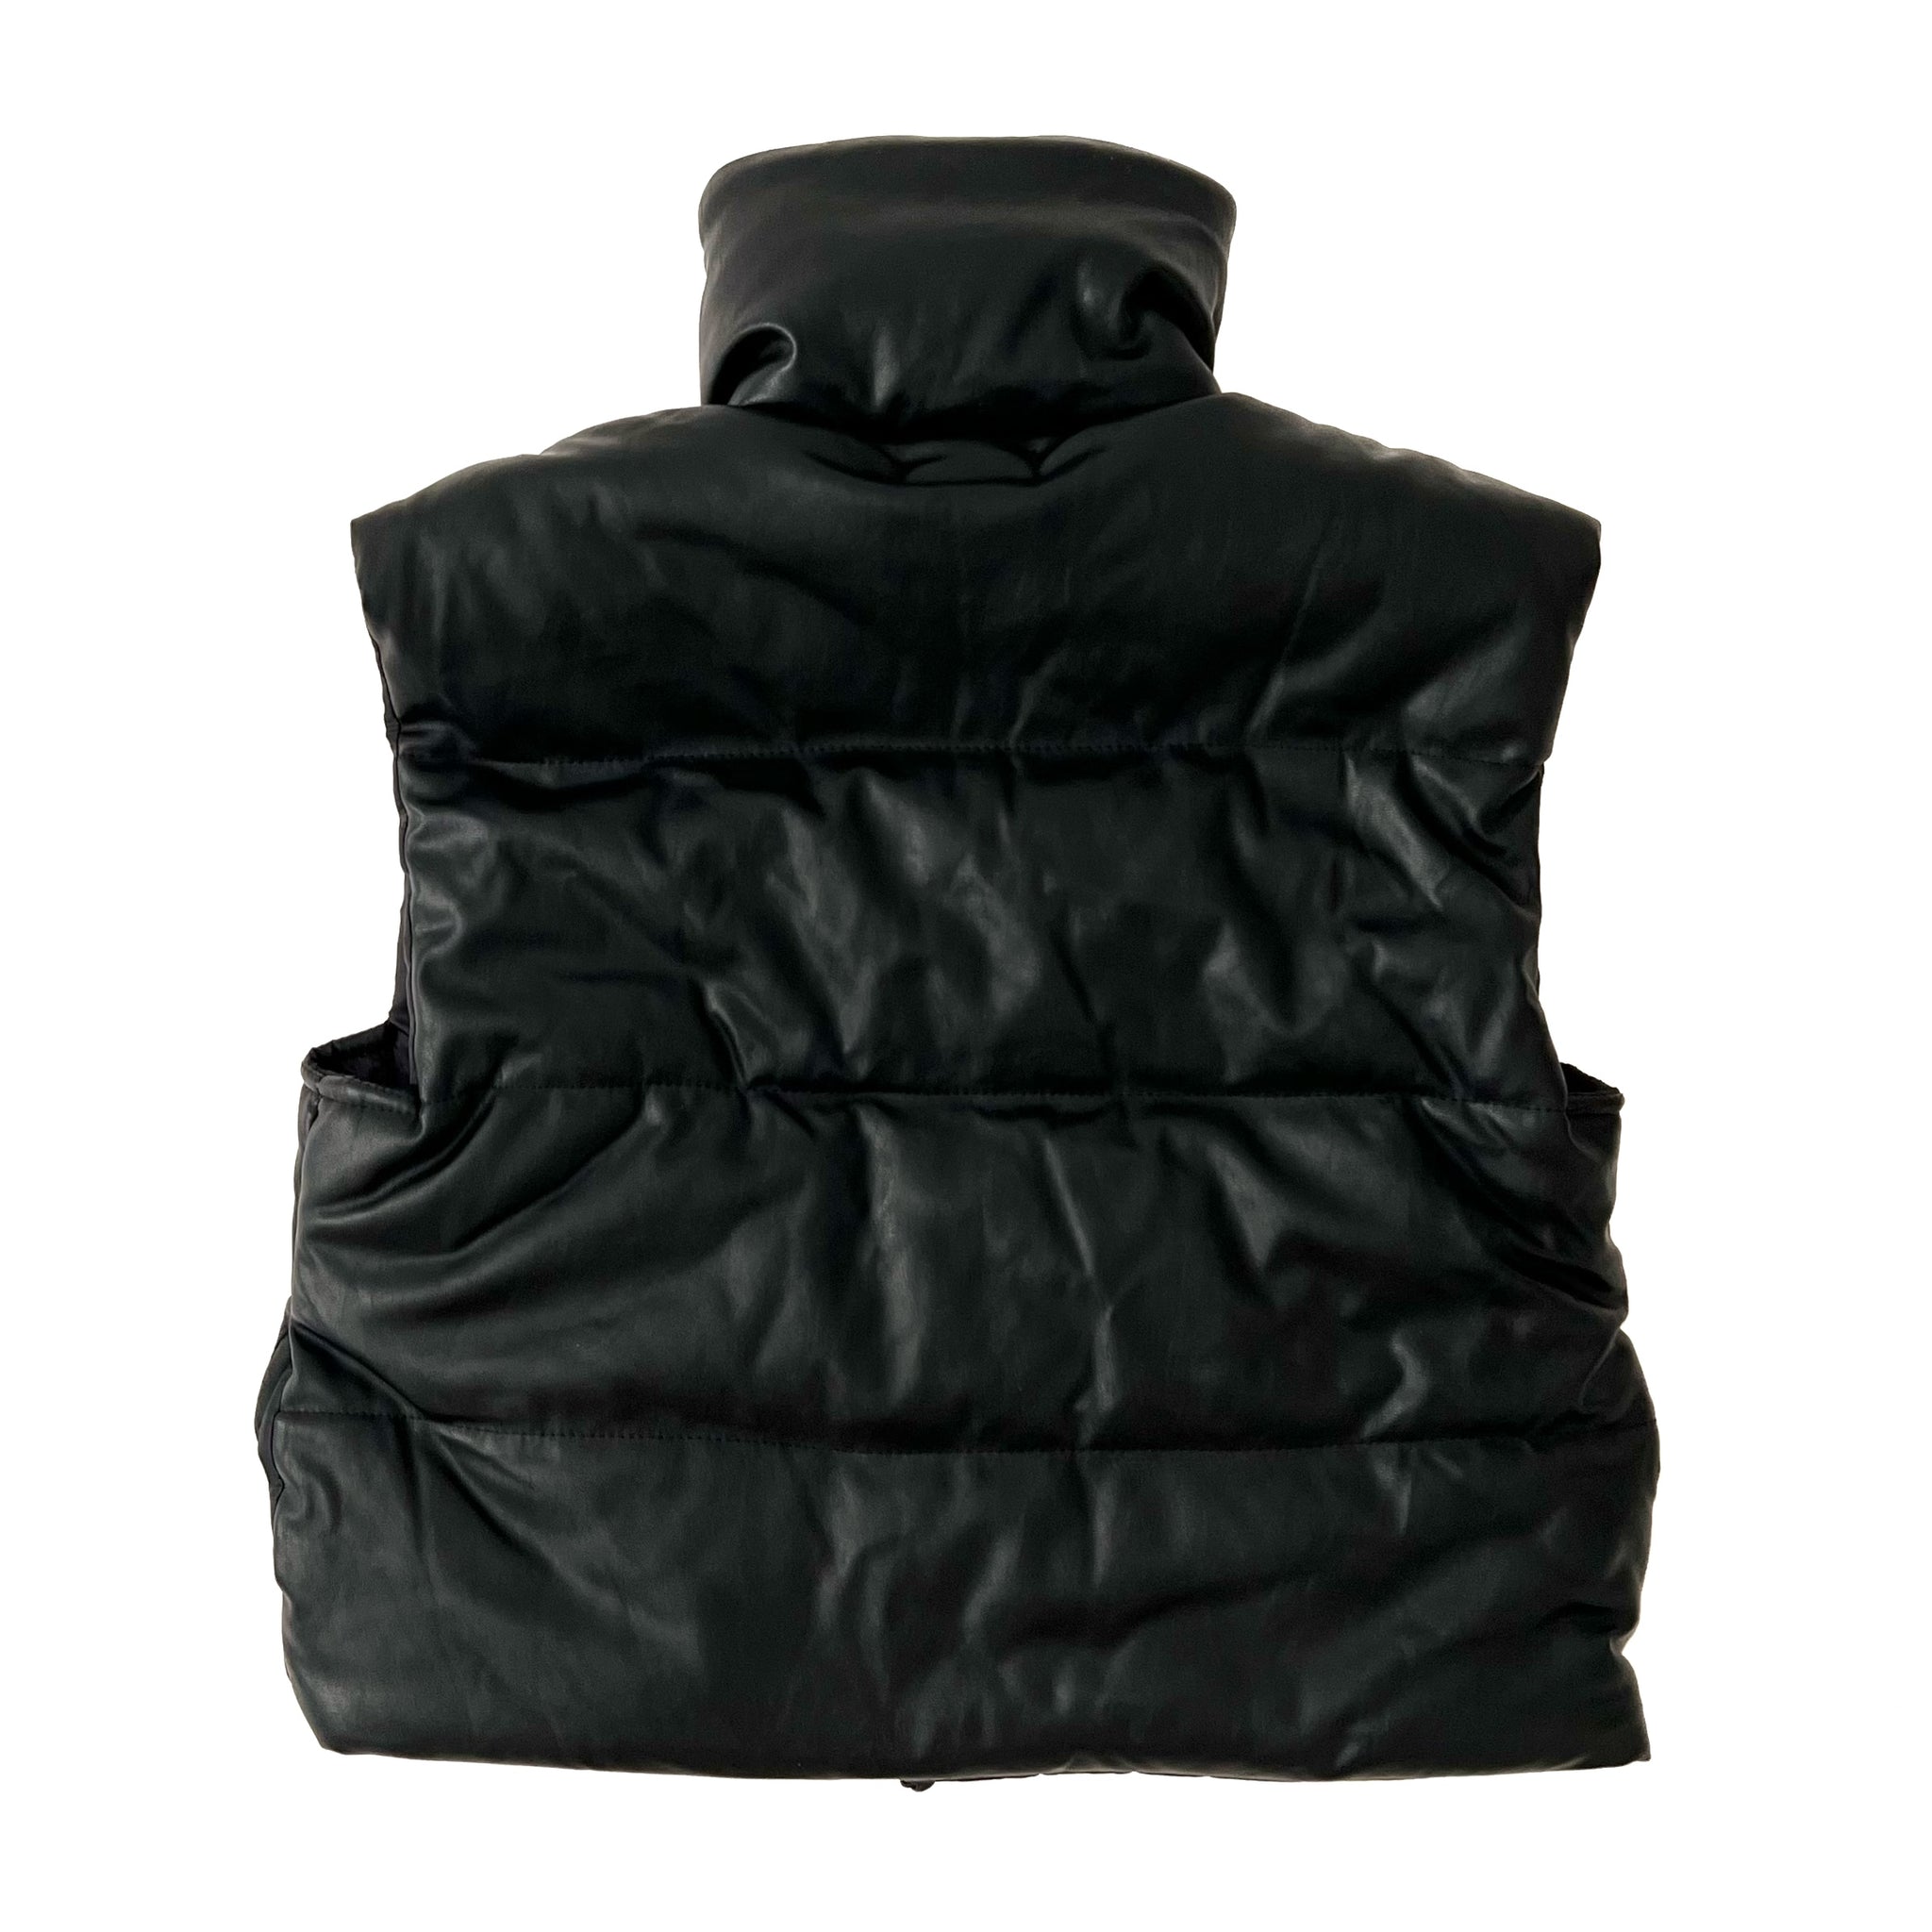 Faux Leather Vest